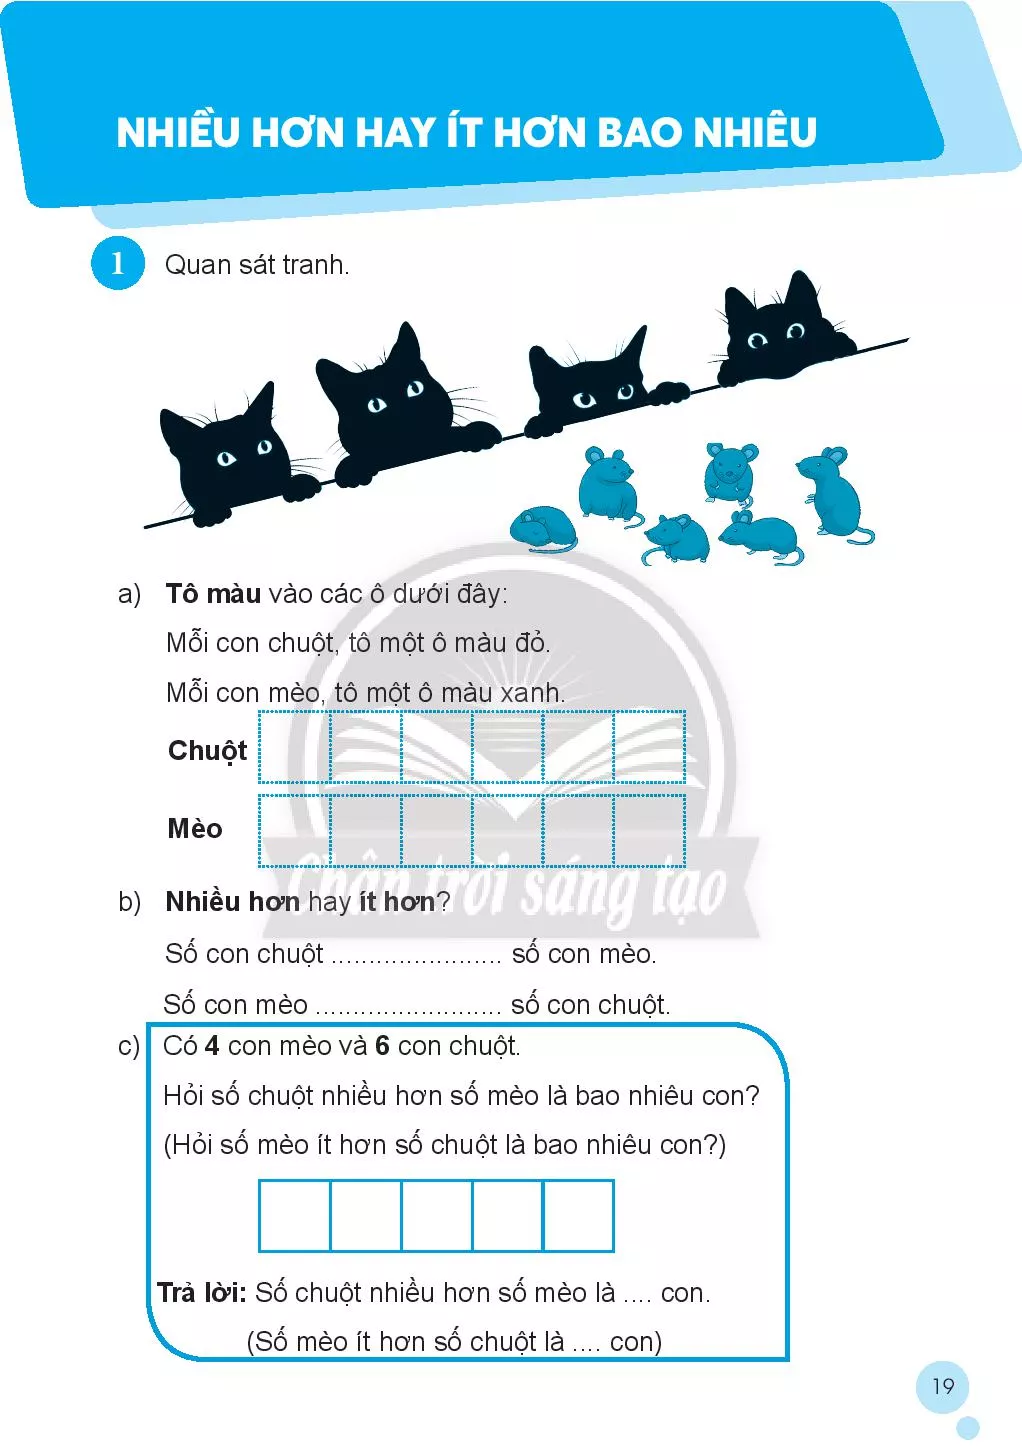 Sách bài tập cũng có thể được trang trí bởi những hình ảnh đáng yêu của loài mèo. Hãy để bộ sưu tập hình nền sách bài tập của chúng tôi làm mới mọi ngày học của bạn. Bạn sẽ thấy rất thích thú khi nghía nhìn mấy chú mèo đáng yêu trong các sách của mình.